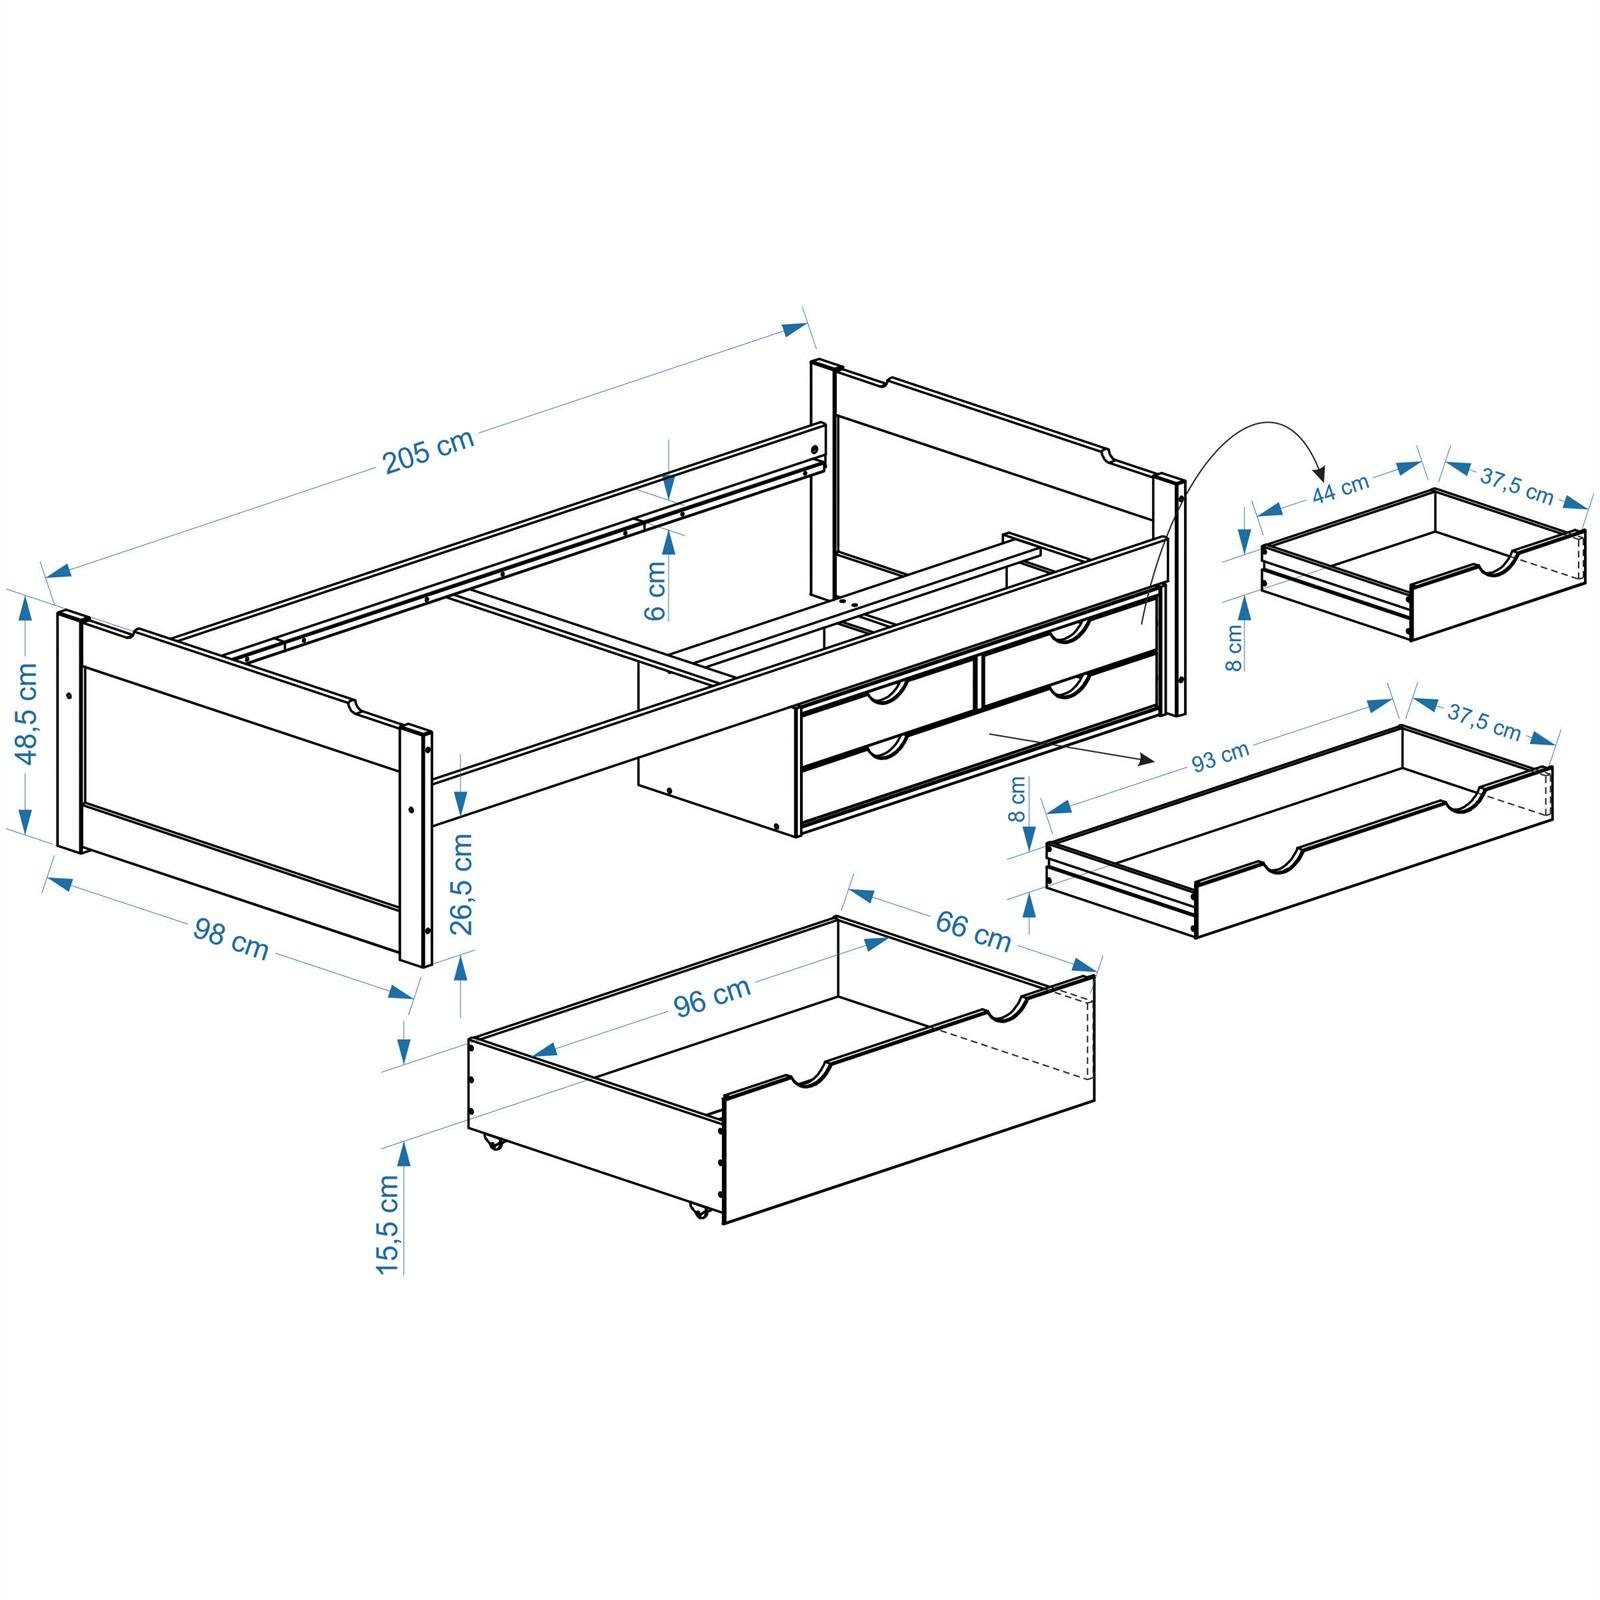 IDIMEX massiv ANDREA, Kiefer mit 4 Schubladen in Funktionsbett Bett weiss Bett mit Stauraum aus weiß Hol